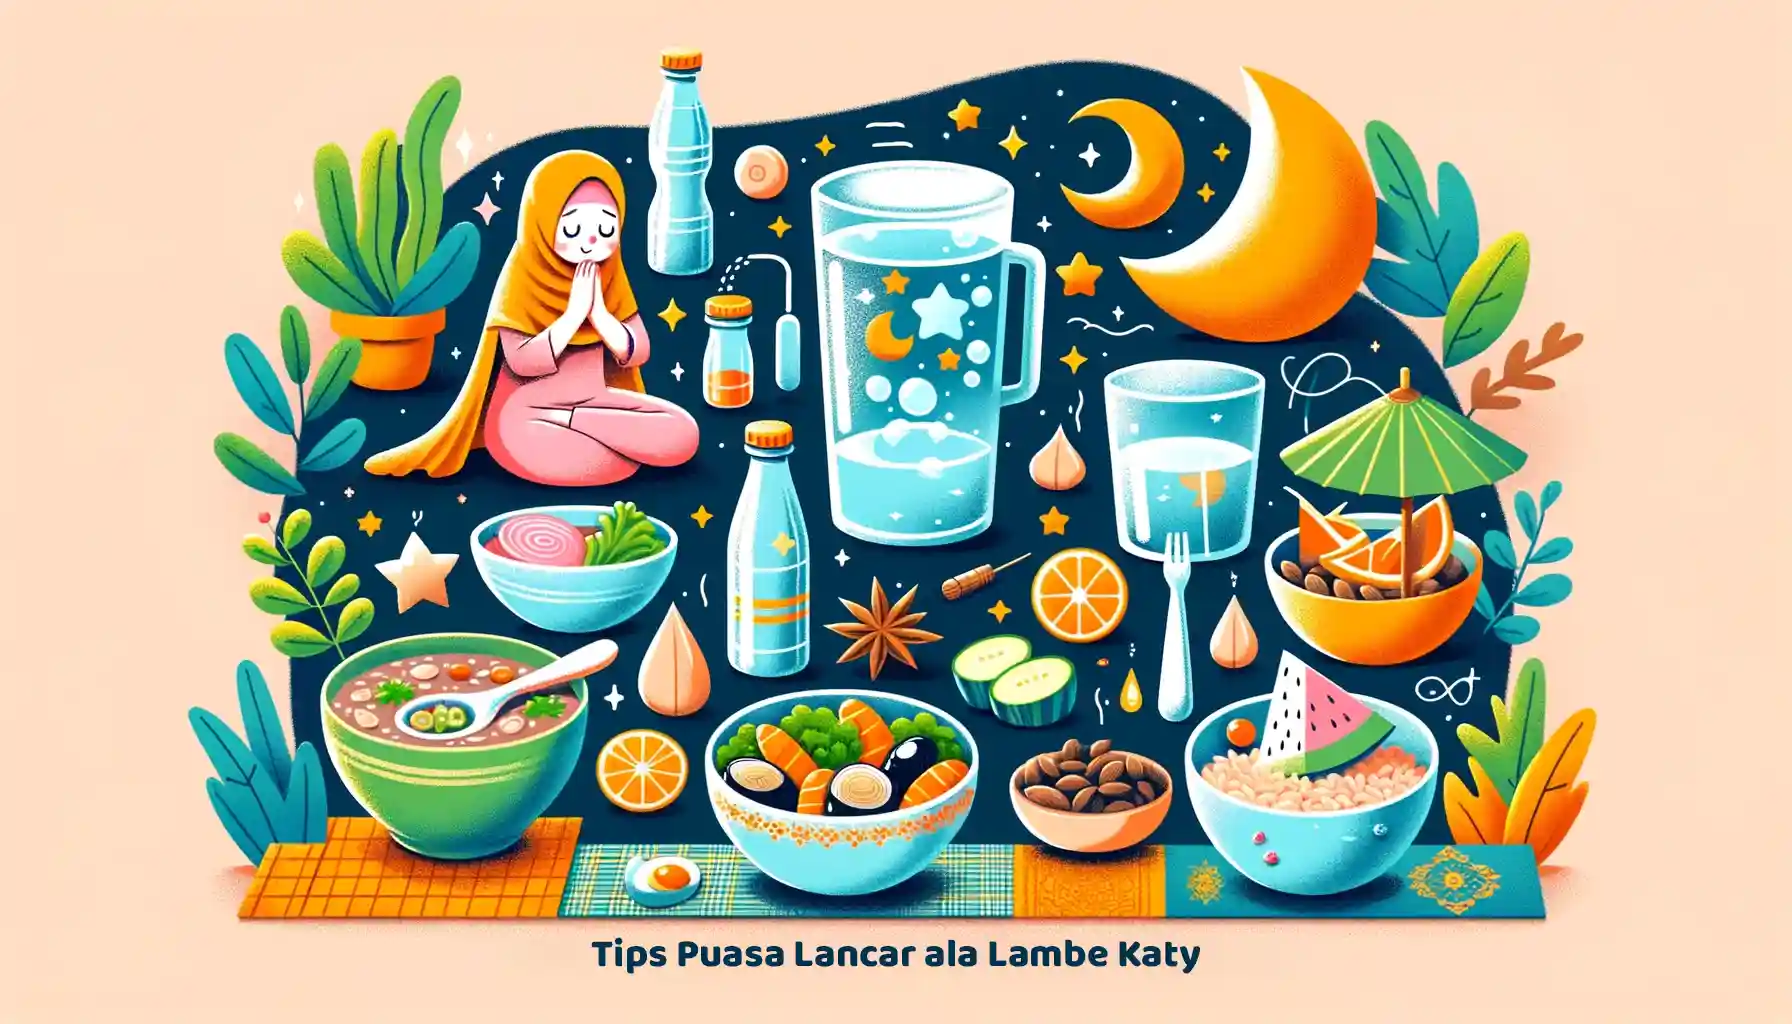 Dapatkan Tips Puasa Lancar Ala Lambe Katy untuk sahur dan berbuka yang seimbang, menjaga energi dan kesehatan selama bulan suci.